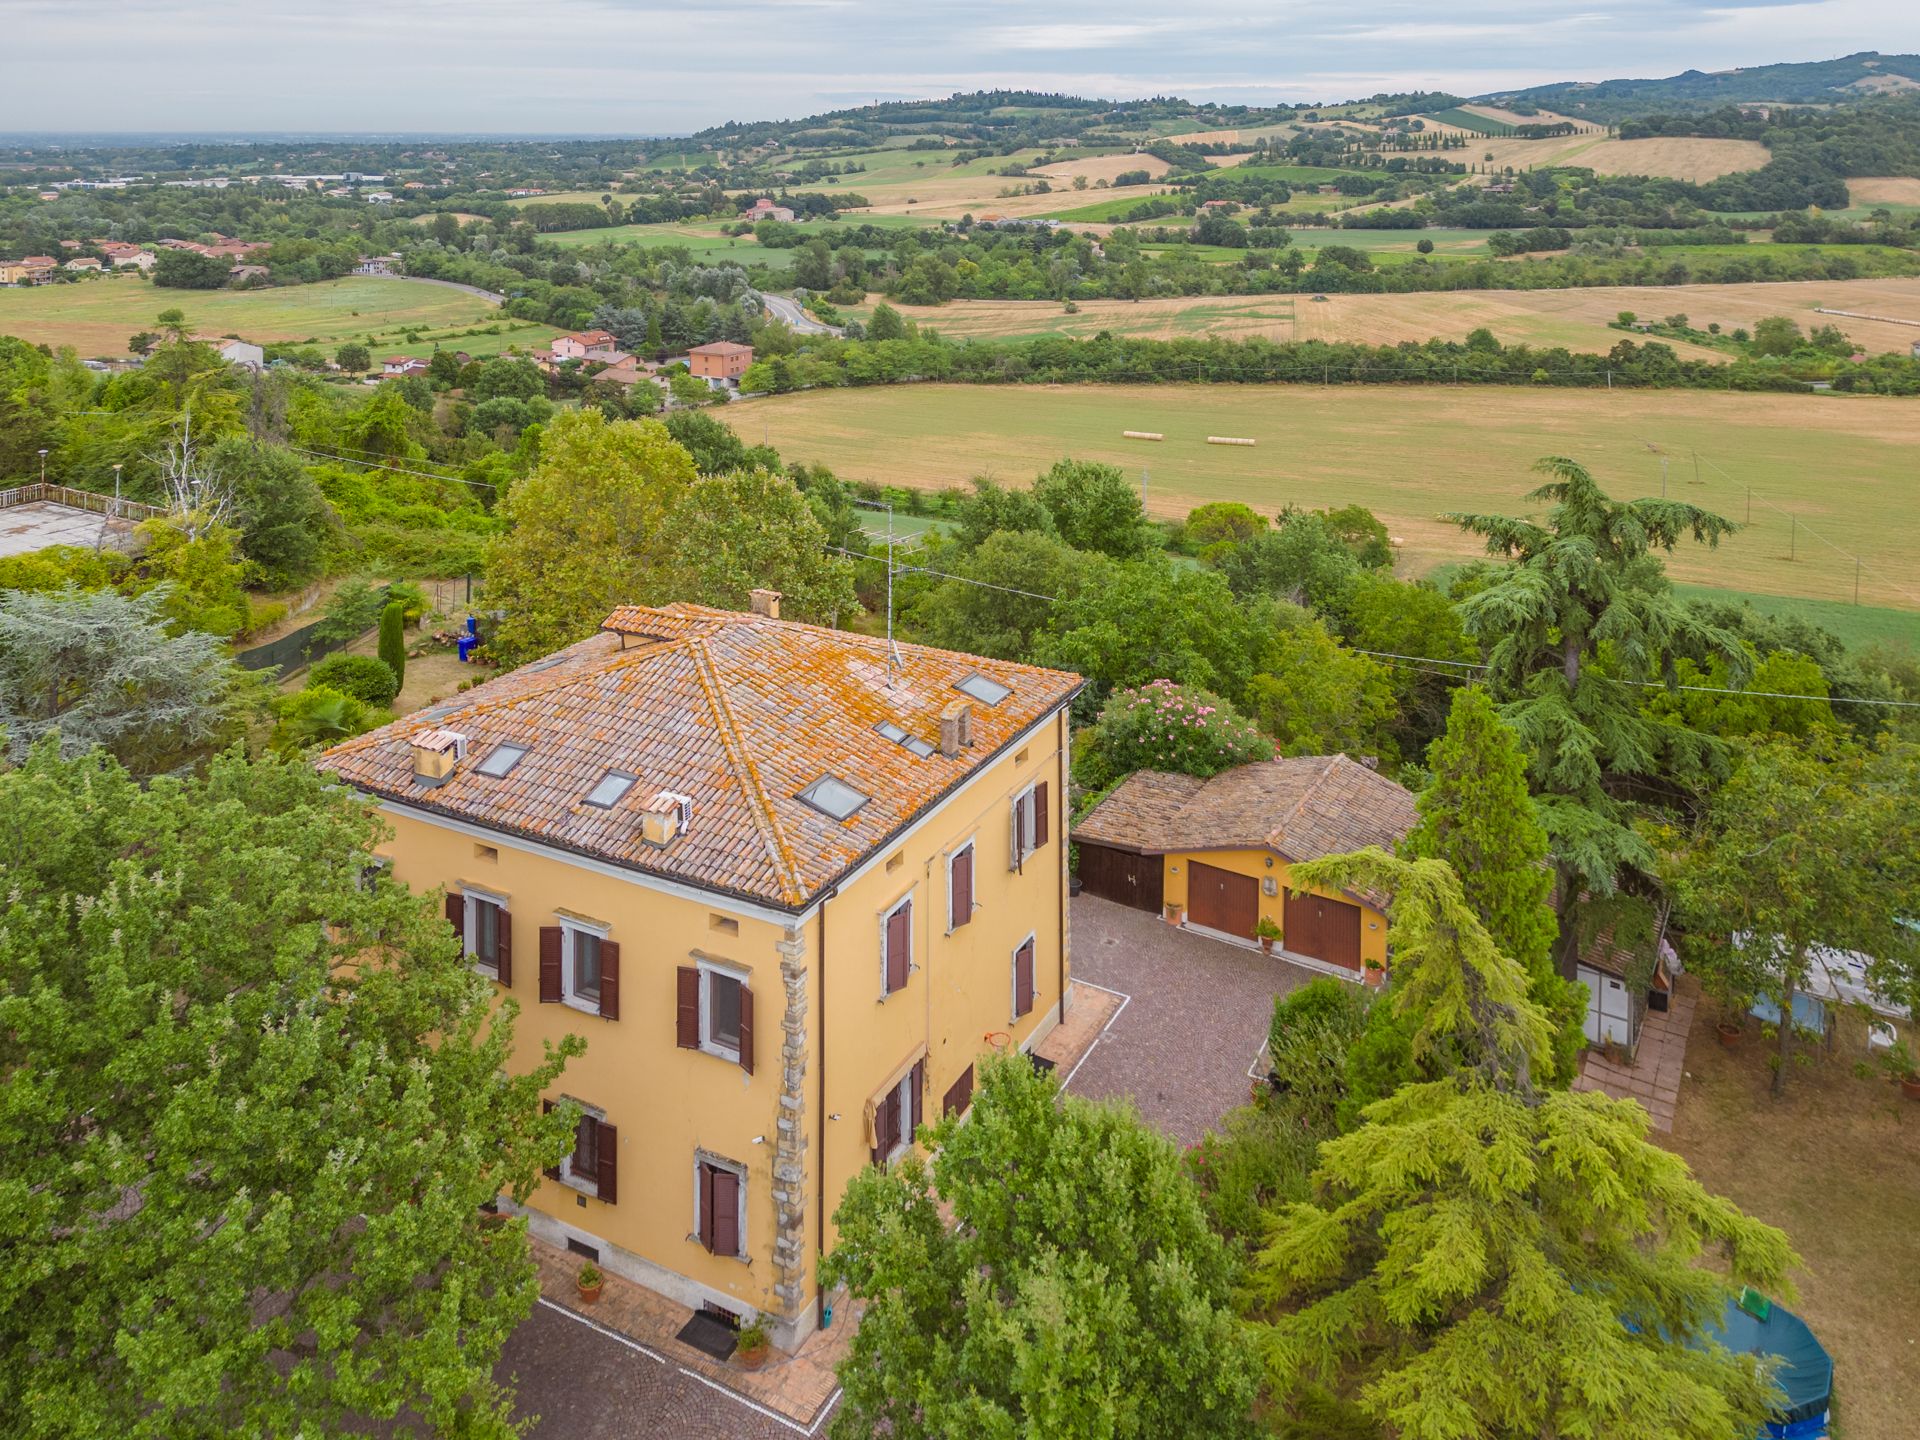 For sale cottage in quiet zone Quattro Castella Emilia-Romagna